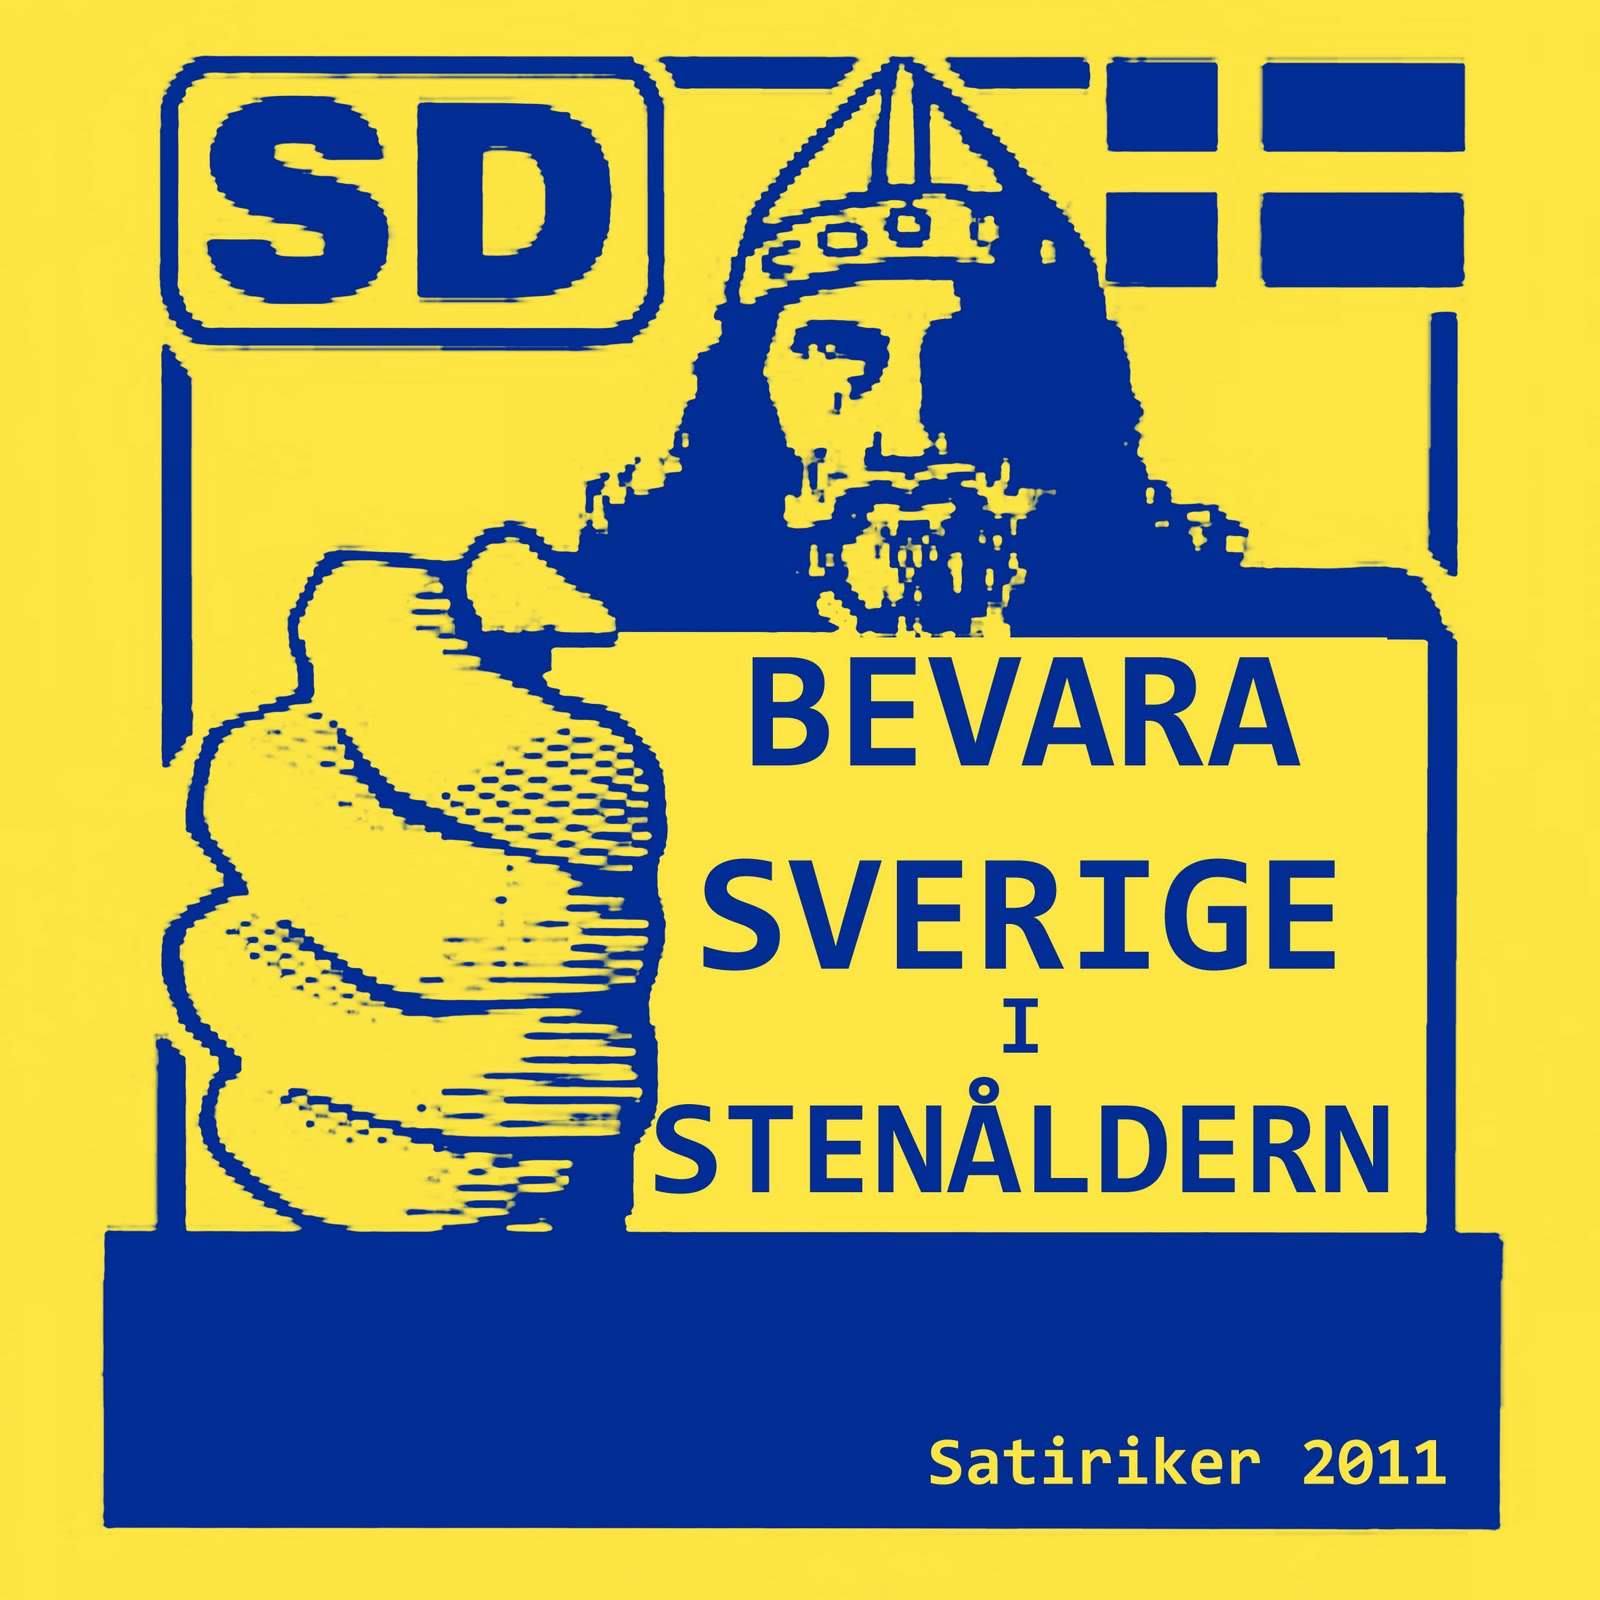 "Κρατείστε την Σουηδία στην λίθινη εποχή", σατυρίζει η αφίσσα τους Σουηδούς Δημοκράτες.